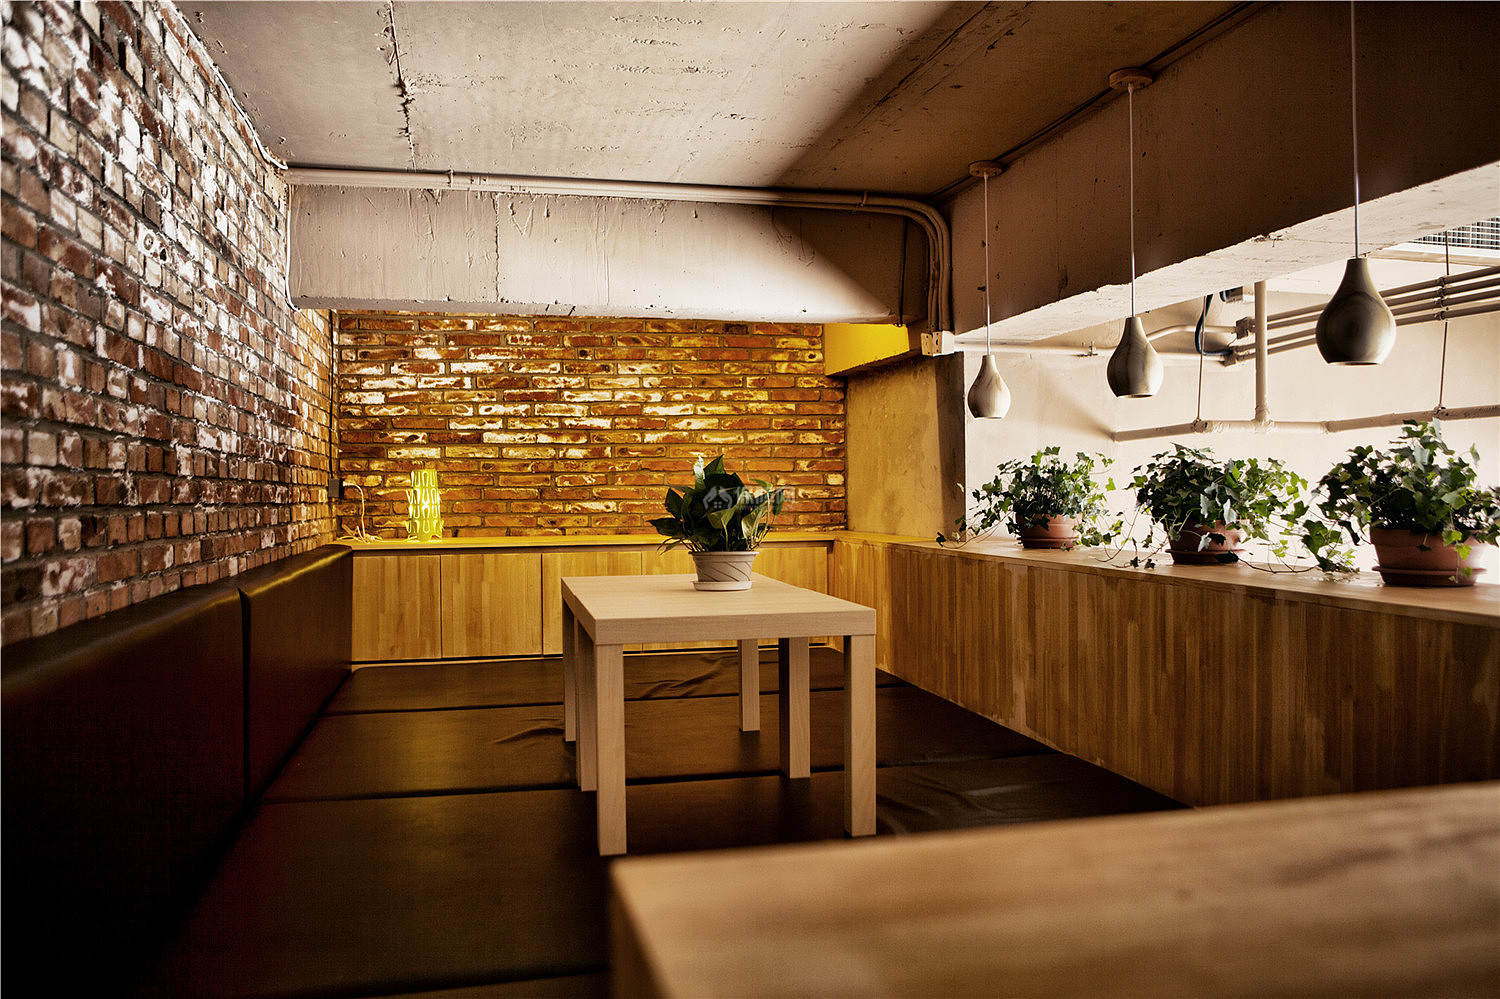 山咖啡馆之独立小空间设计效果图